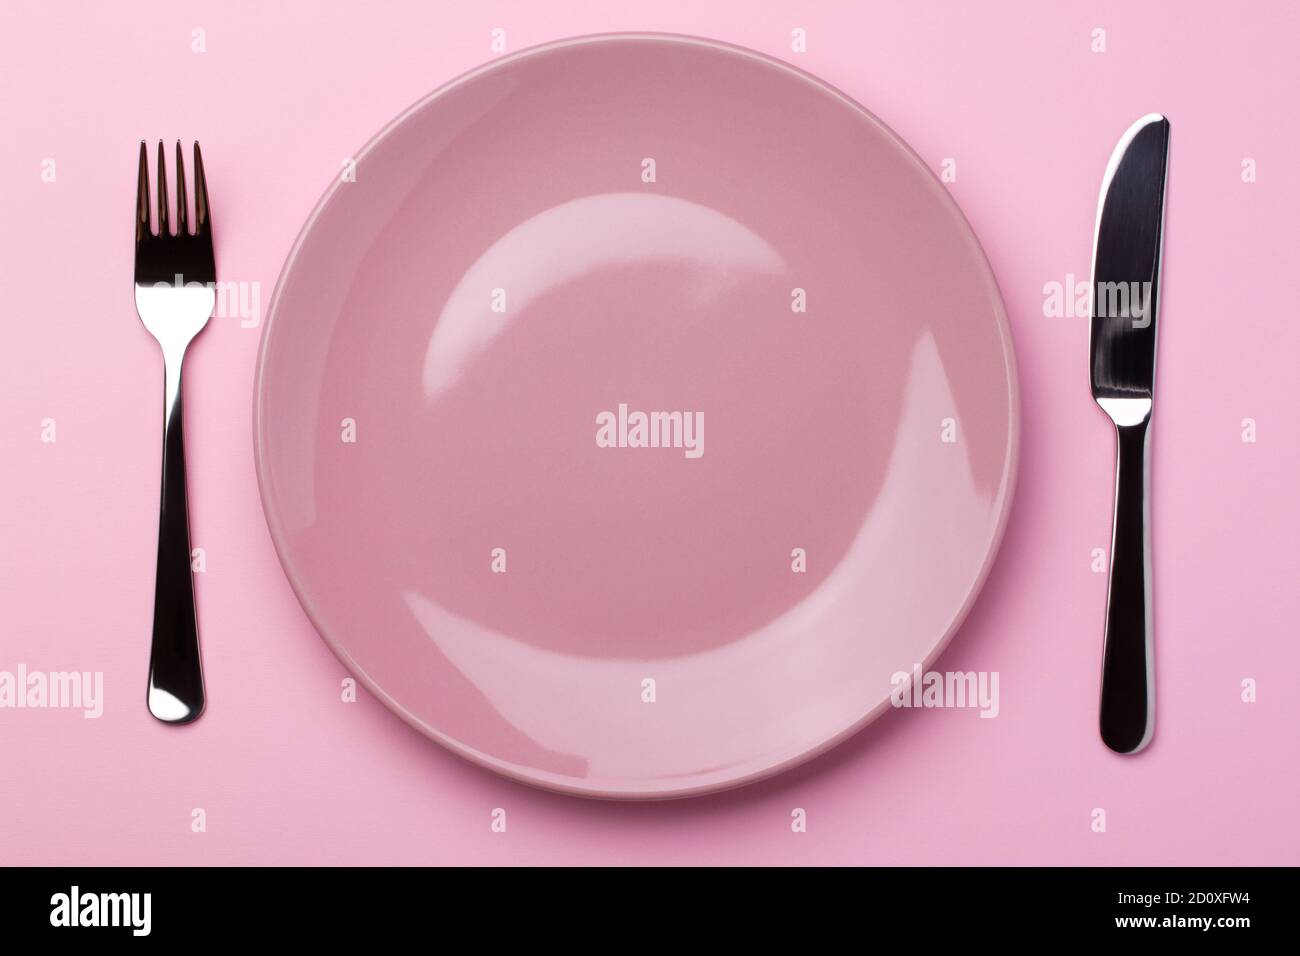 Assiette rose brillante avec couverts en métal - fourchette et couteau sur fond de papier rose. Banque D'Images